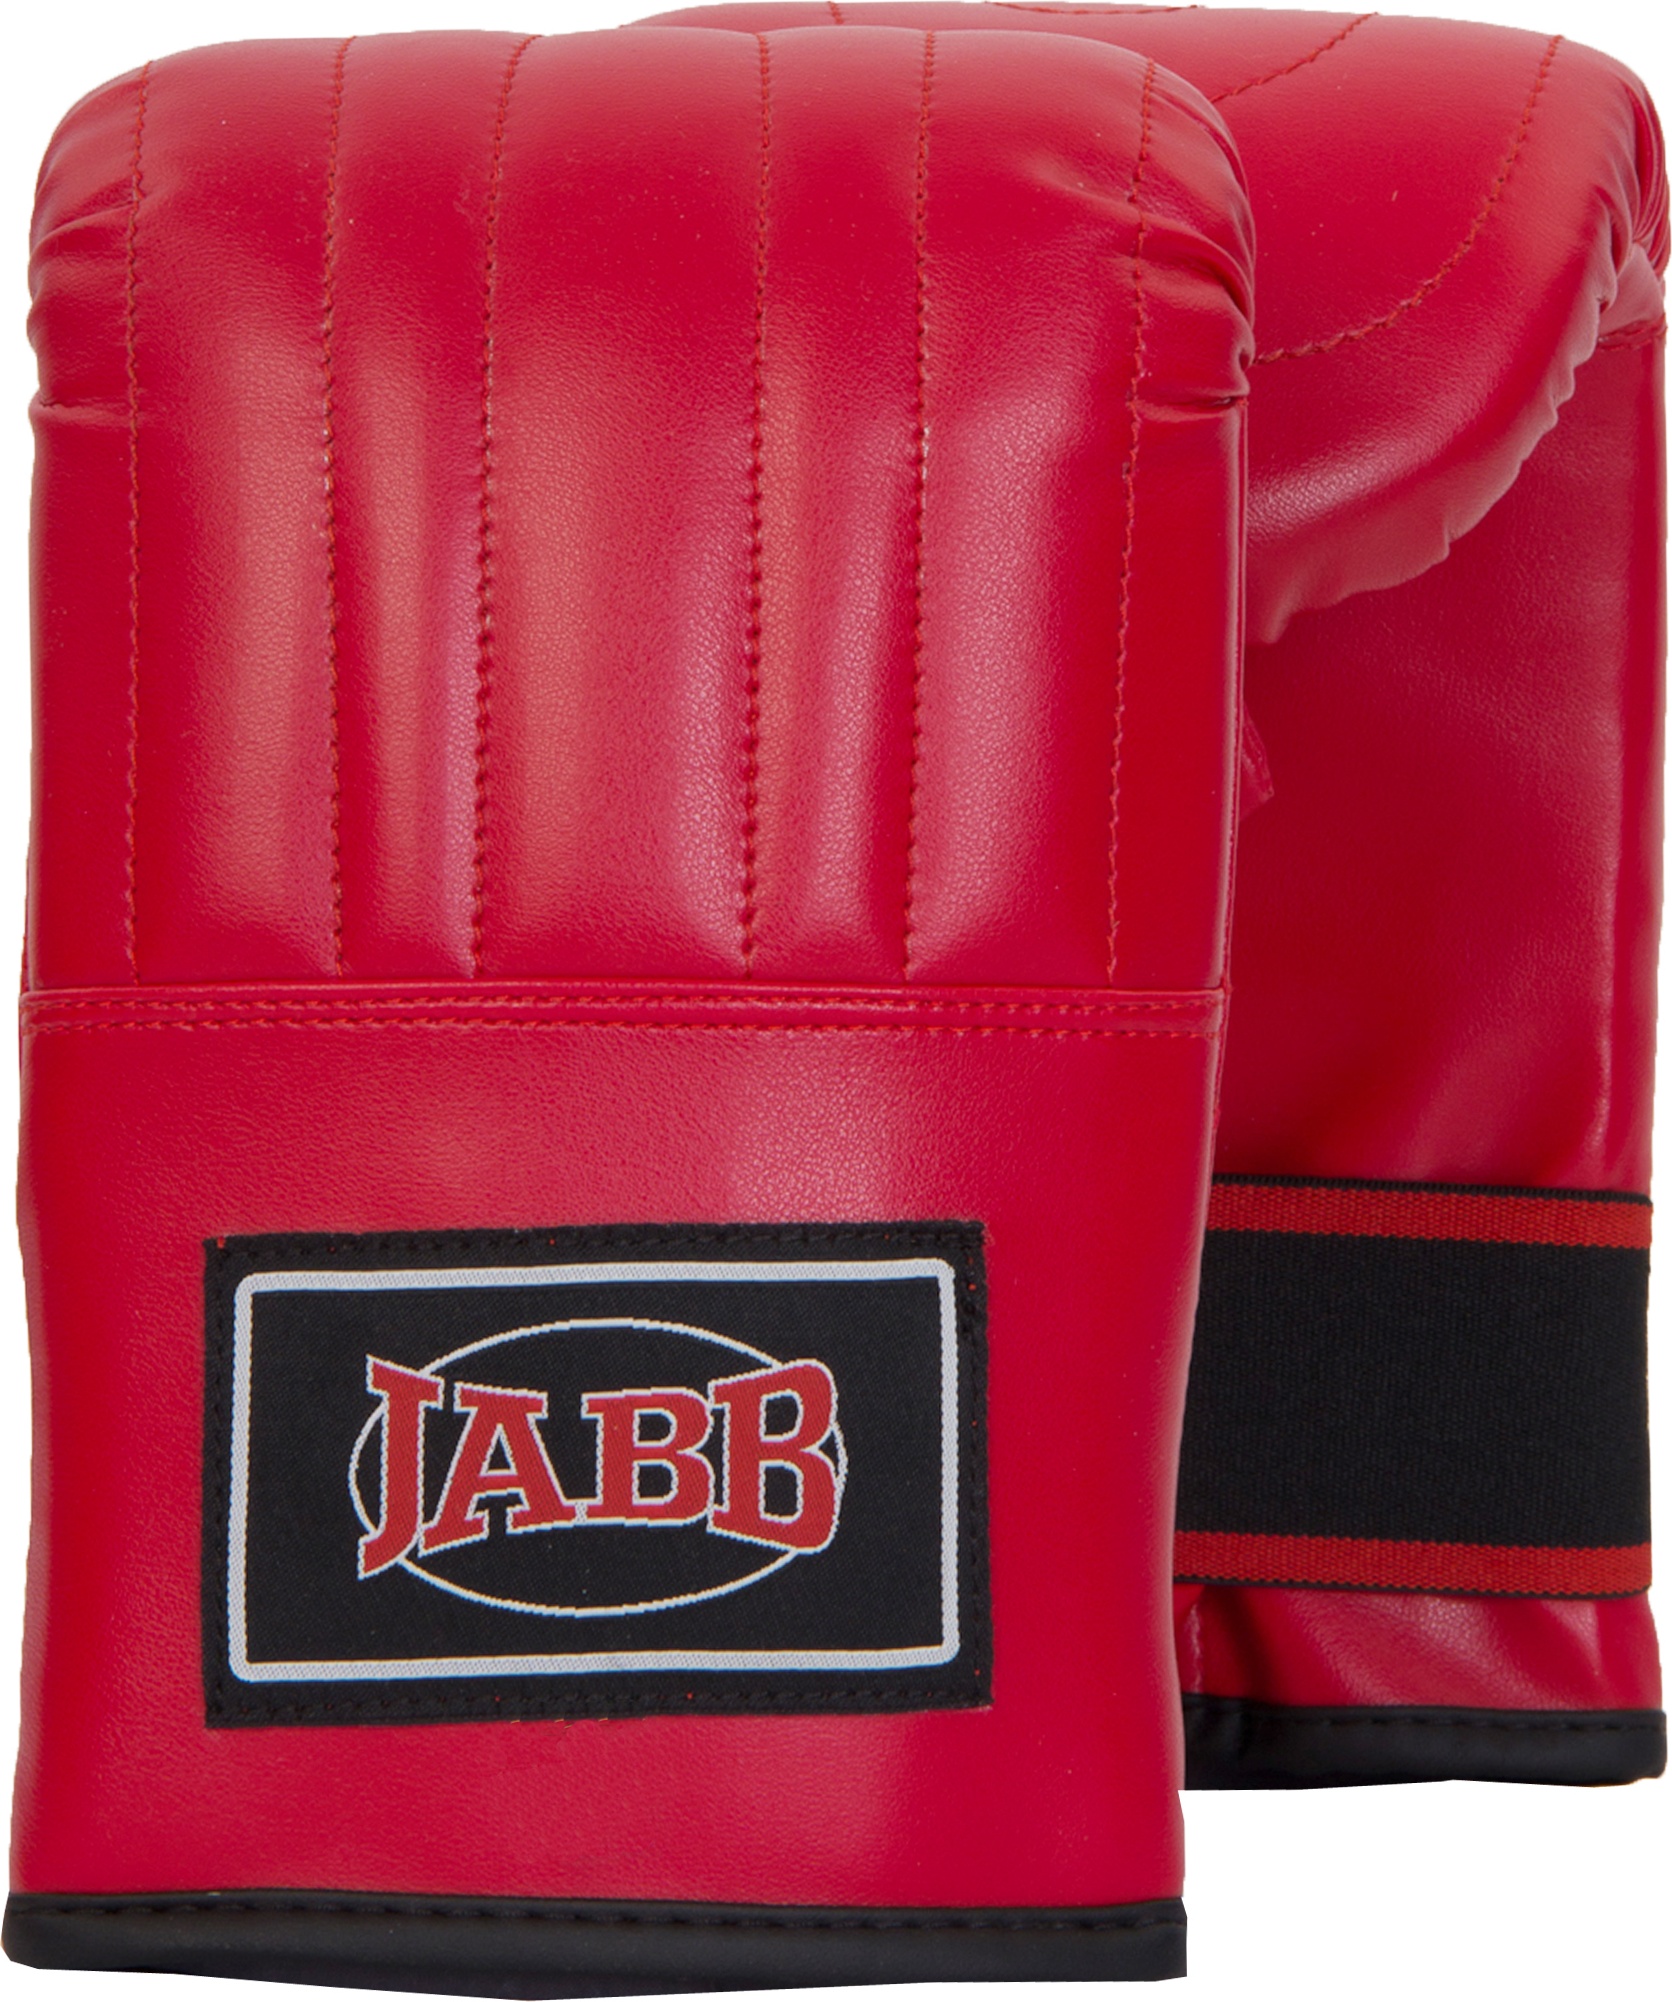 Снарядные перчатки Jabb JE-2075, красный, M